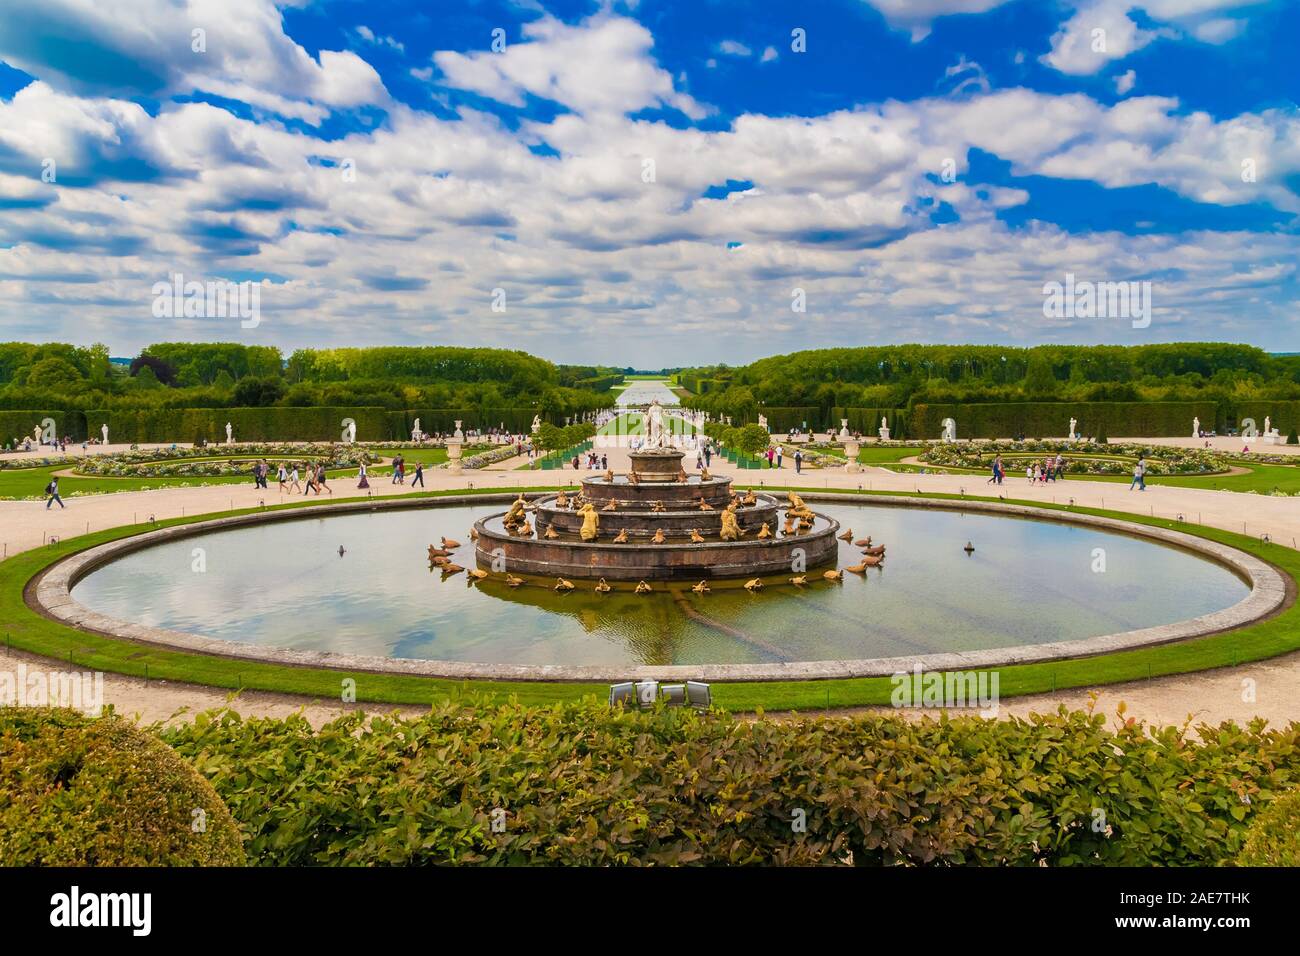 Einen herrlichen Panoramablick auf die Landschaft der Latonabrunnen (Bassin de Latone) in die Gärten von Versailles mit dem Grand Canal im Hintergrund auf einem netten... Stockfoto